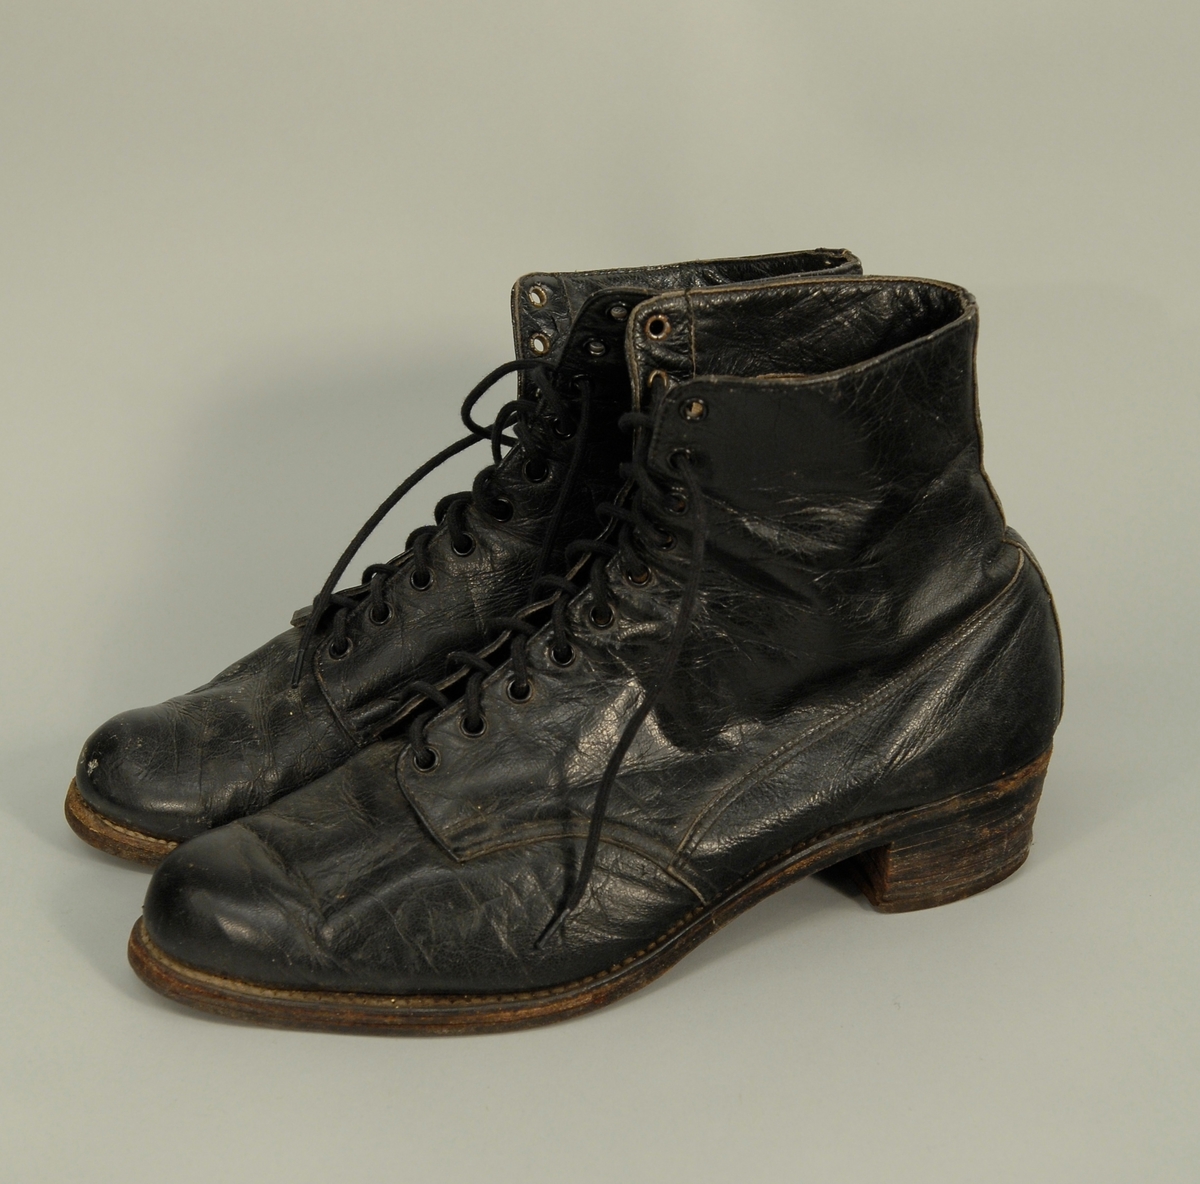 Skoene går opp til vristen, har snøring med 2x10 hull, av svart lær, og har ein liten flat hæl. Foret med hvitt bomullsstoff. Str. ca. 39.